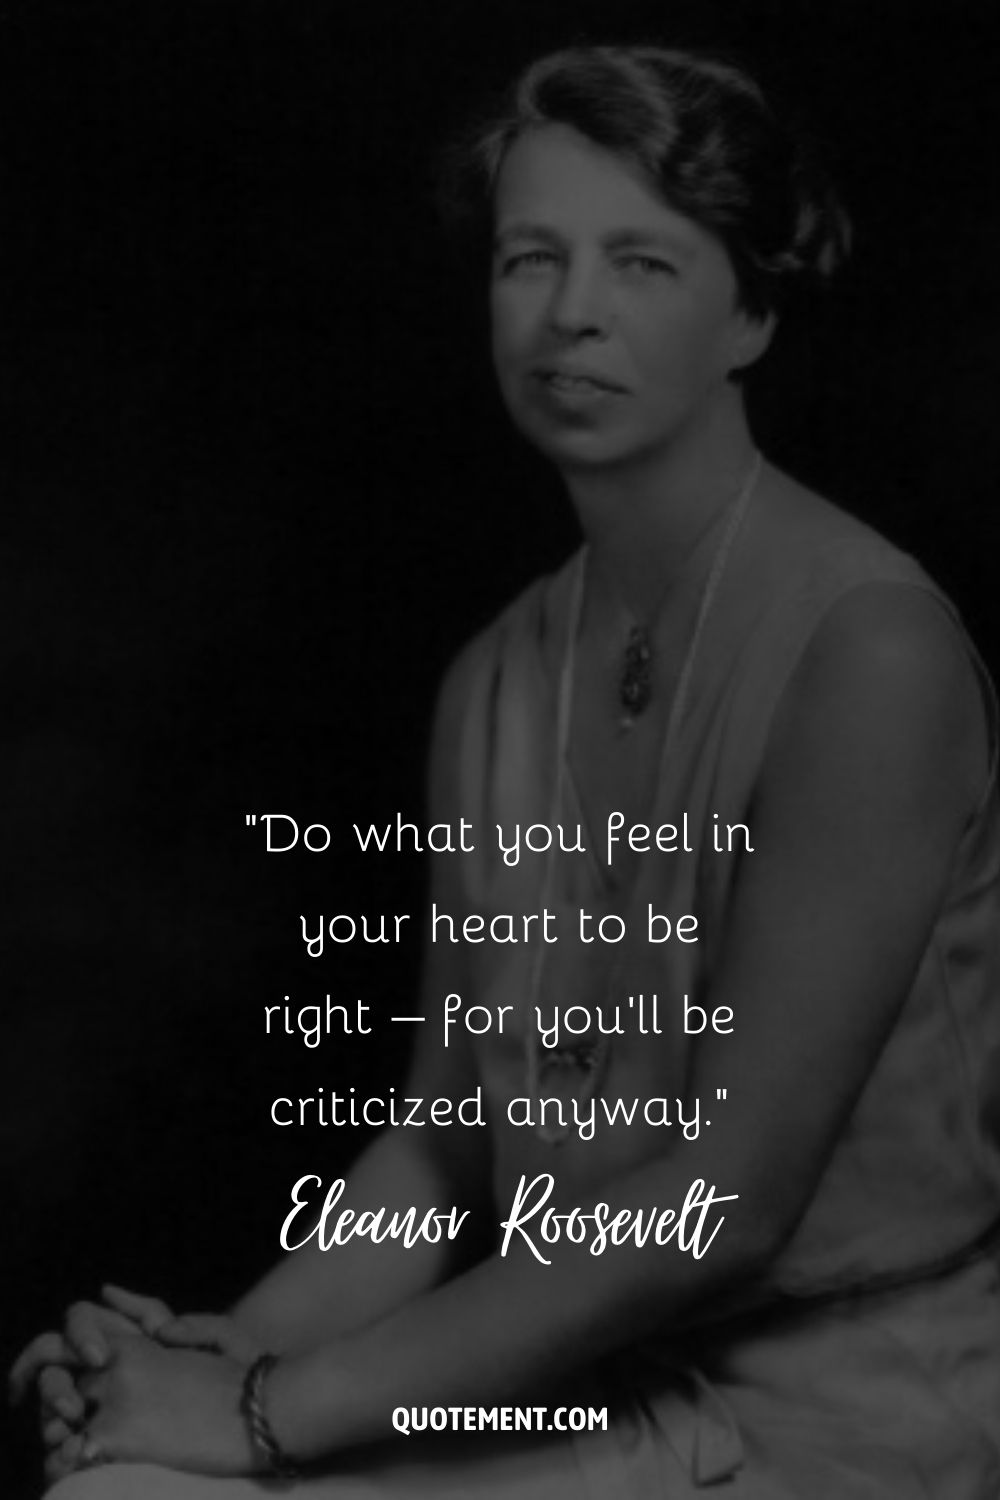 Imagen de la graciosa Eleanor representando la mayor cita de Eleanor Roosevelt.